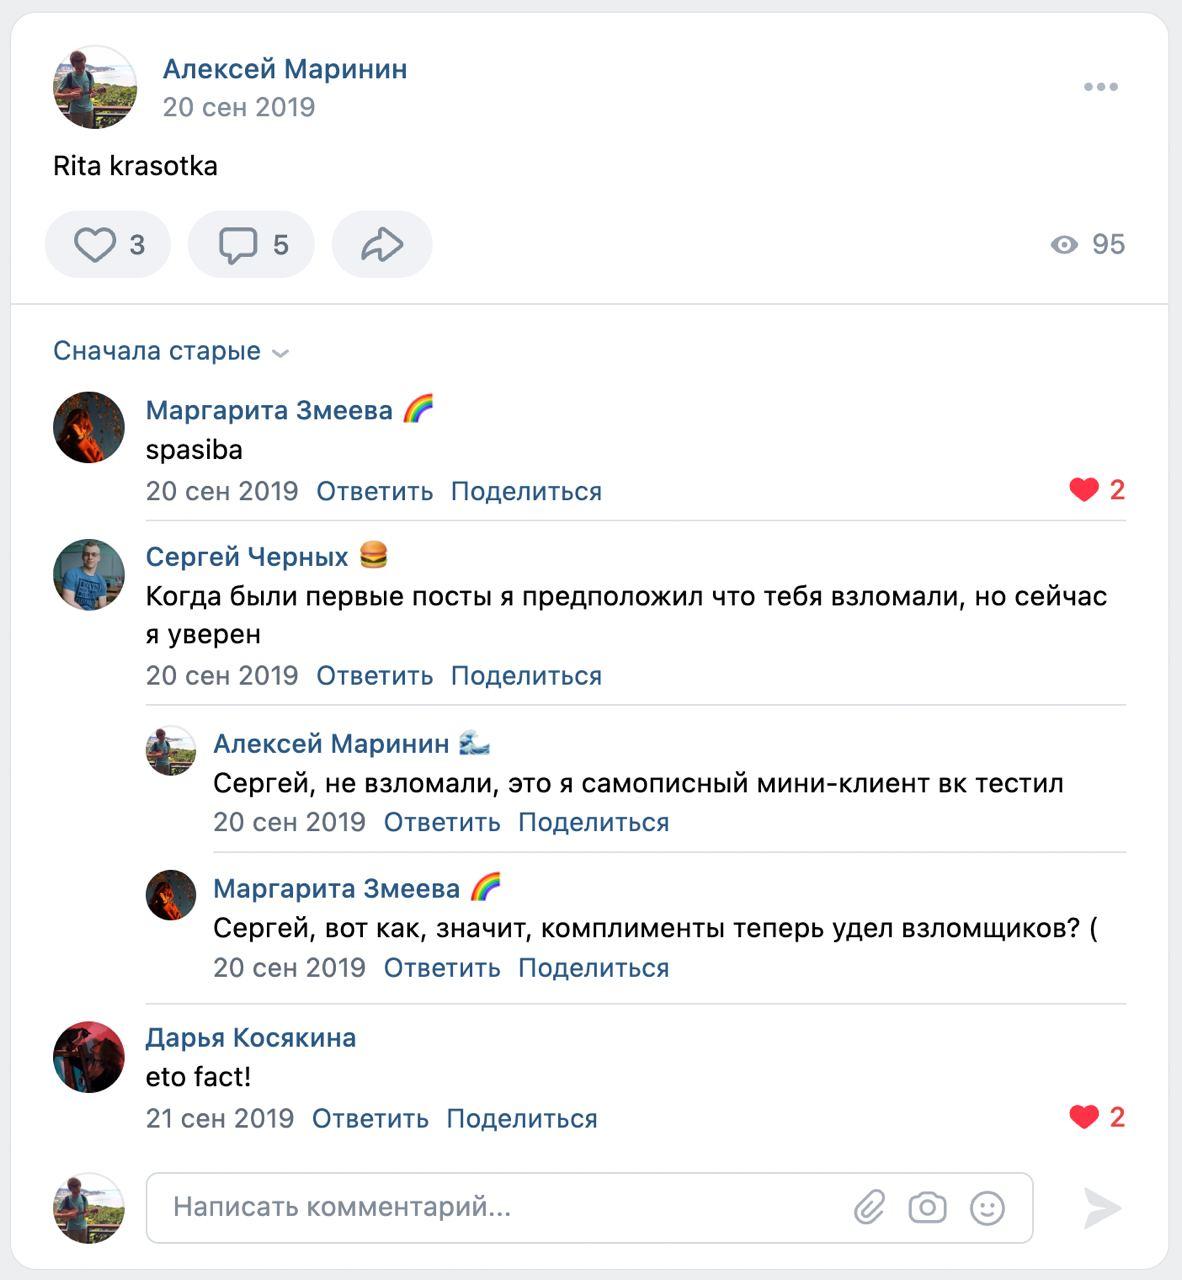 Переписка друзей на стене ВКонтакте